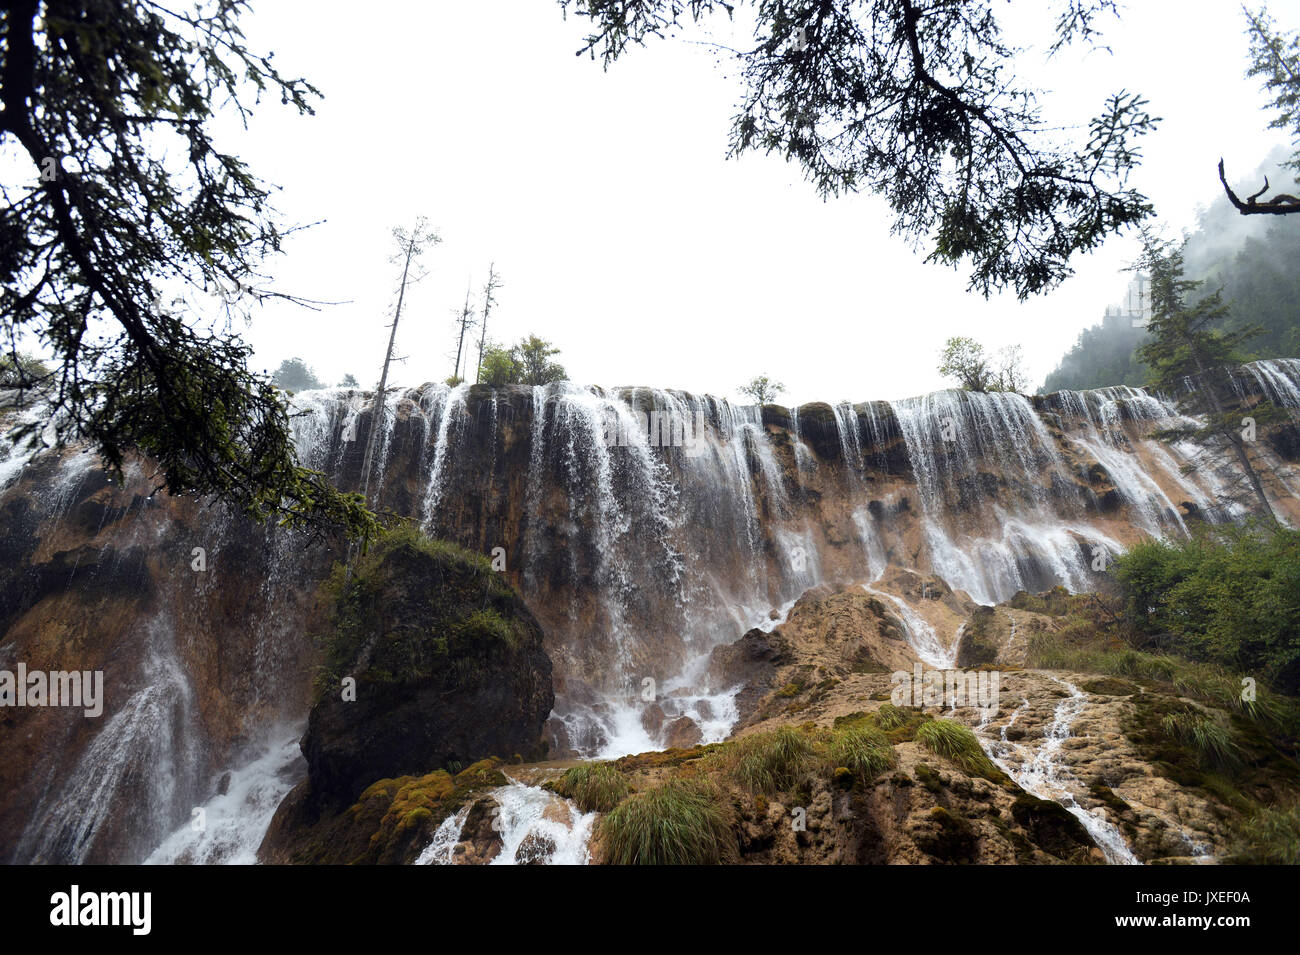 August 16, 2017 -'Ã"Â'Â¨Â°Â¢â°'Â¾Ã Â¯Â¹Â …','Ã"Â'Â¨Â°Â¢â°' … Â¾Ã Â¯Â¹Â, China - Sichuan, China (redaktionelle Verwendung. CHINA). Pearl Shoal Wasserfall ist ein Wasserfall in Jiuzhaigou, Aba-Ngawa tibetischen autonomen Präfektur Qiang im Norden der Provinz Sichuan, China. Der Wasserfall liegt auf einem der Nebenflüsse des Bailong River. Auf einer Höhe von 2.433 m (7,982 ft) befindet sich oben auf der Wasserfall ist 162,5 m (533 ft) breit. Es hat einen Sturz von 40 m (130 ft). Die Erdbeben Jiuzhaigou Scenic Area am 8. August 2017, die viele malerische Orte einschließlich Pe Stockfoto